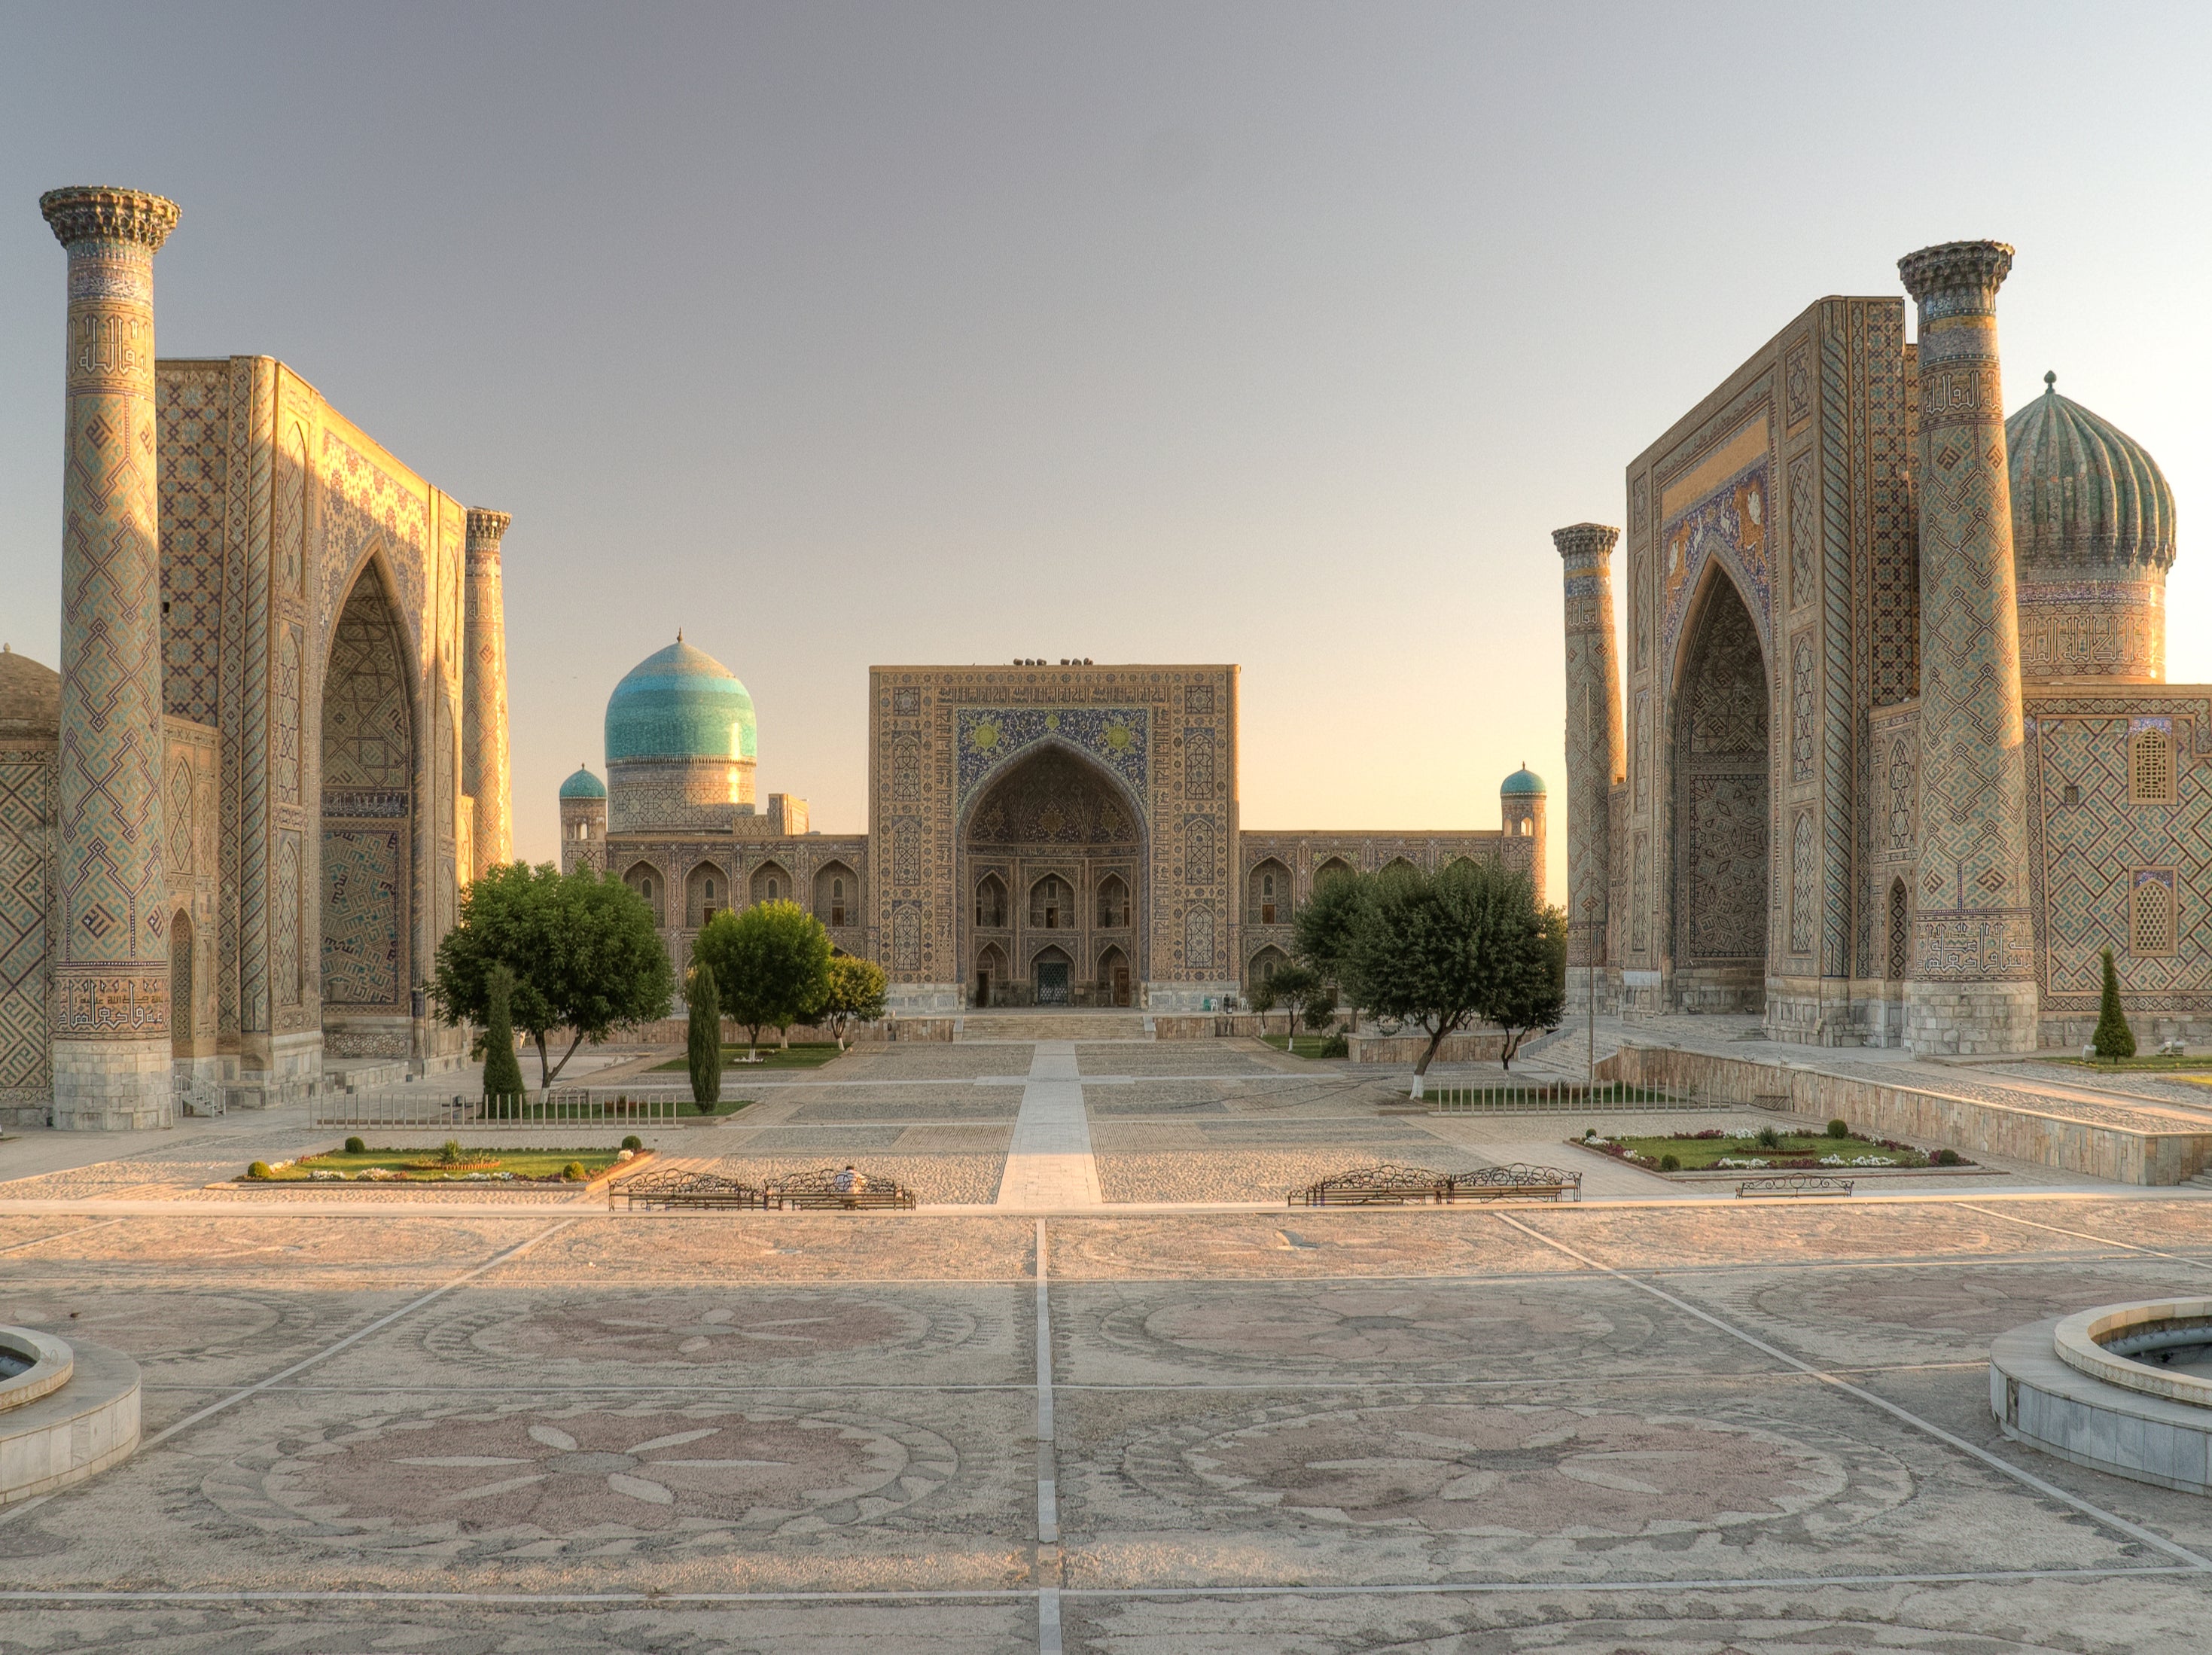 Golden road: Registan Square in Samarkand, Uzbekistan